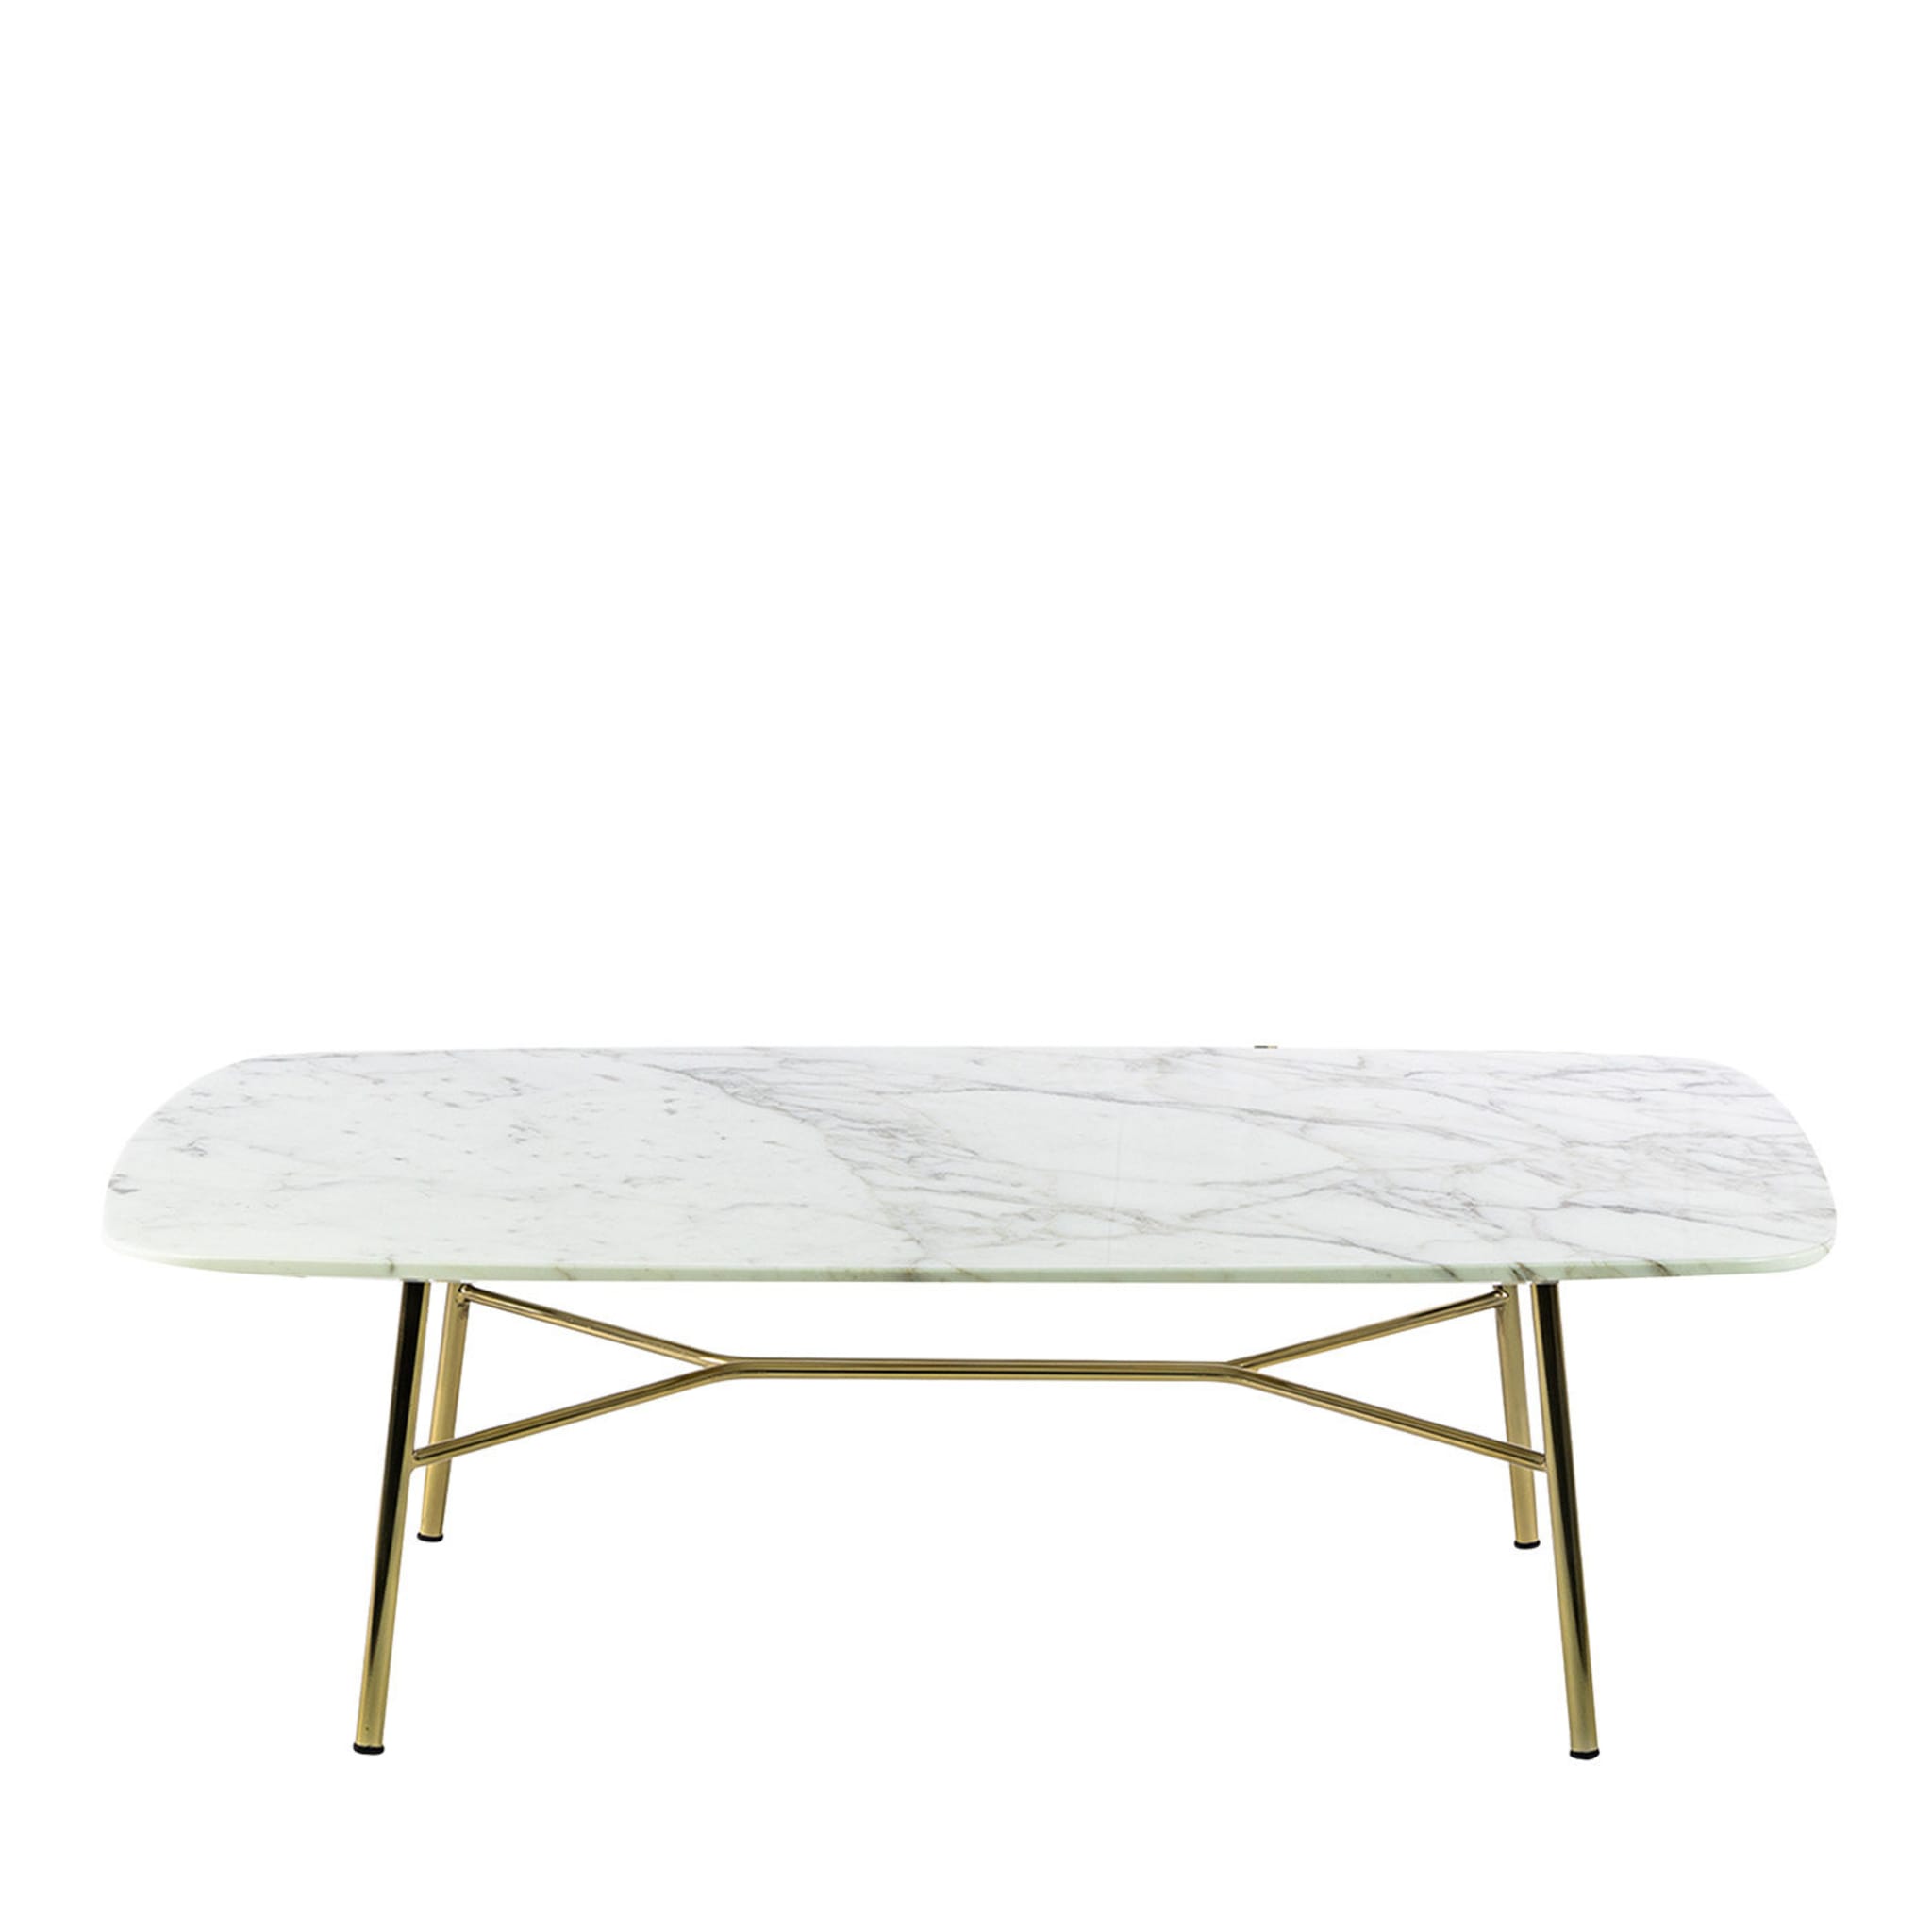 Table basse rectangulaire Yuki avec plateau en carrare blanc # 1 par Ep Studio - Vue principale